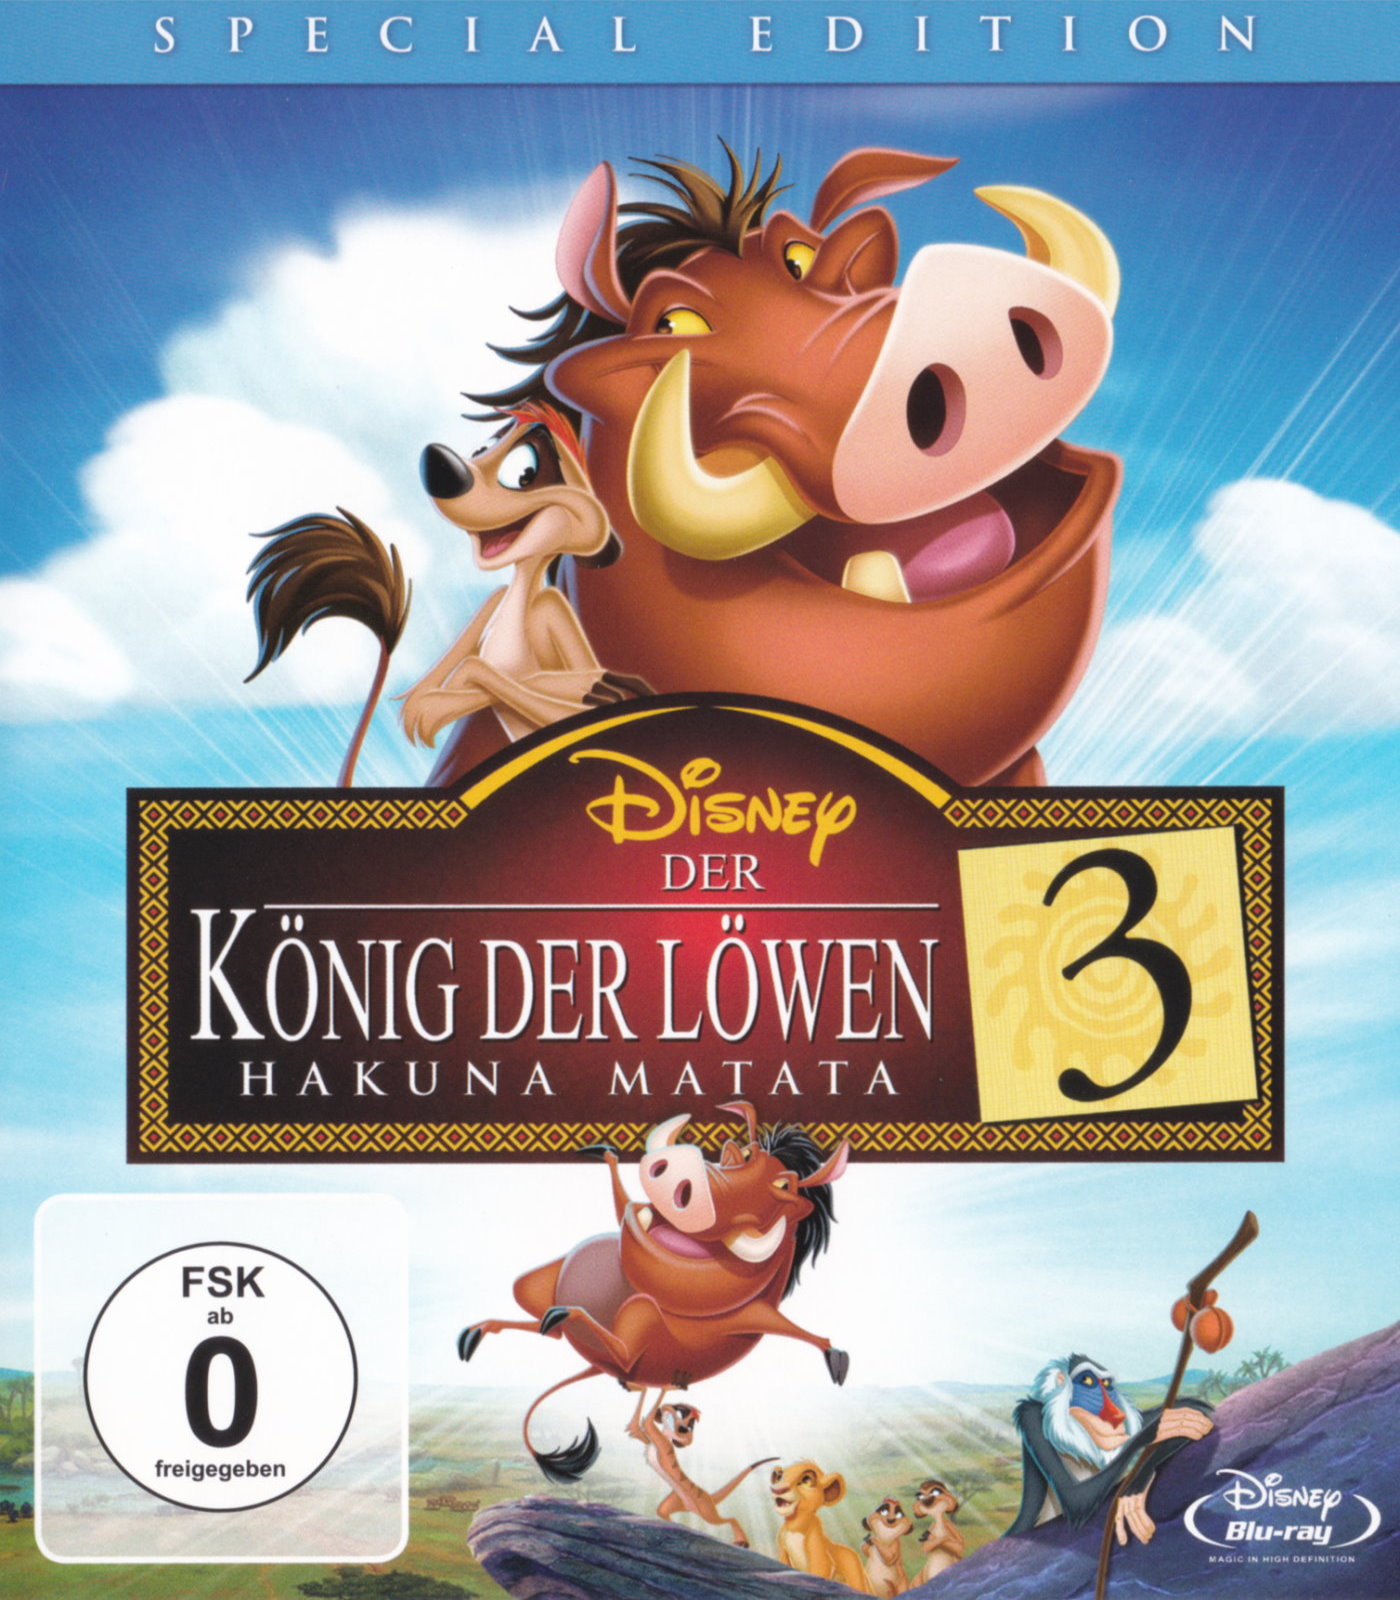 Cover - Der König der Löwen 3 - Hakuna Matata.jpg